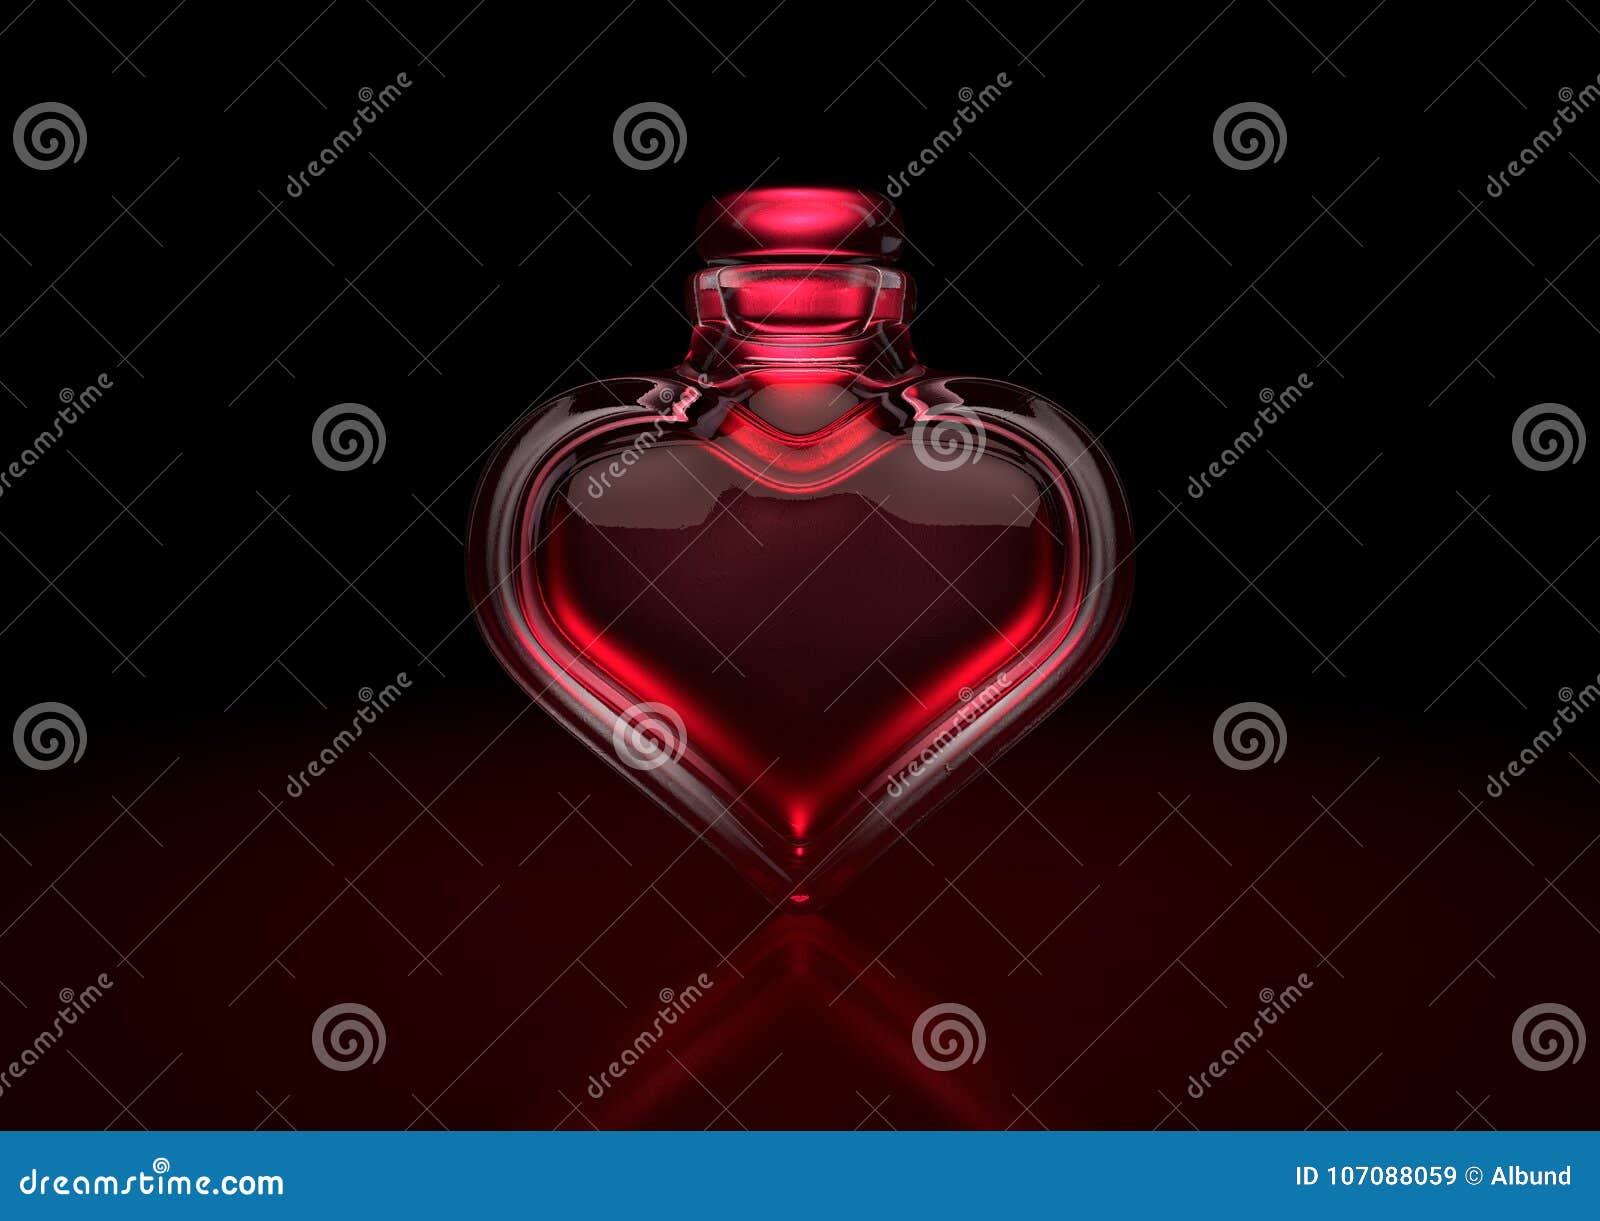 love potion heart bottle